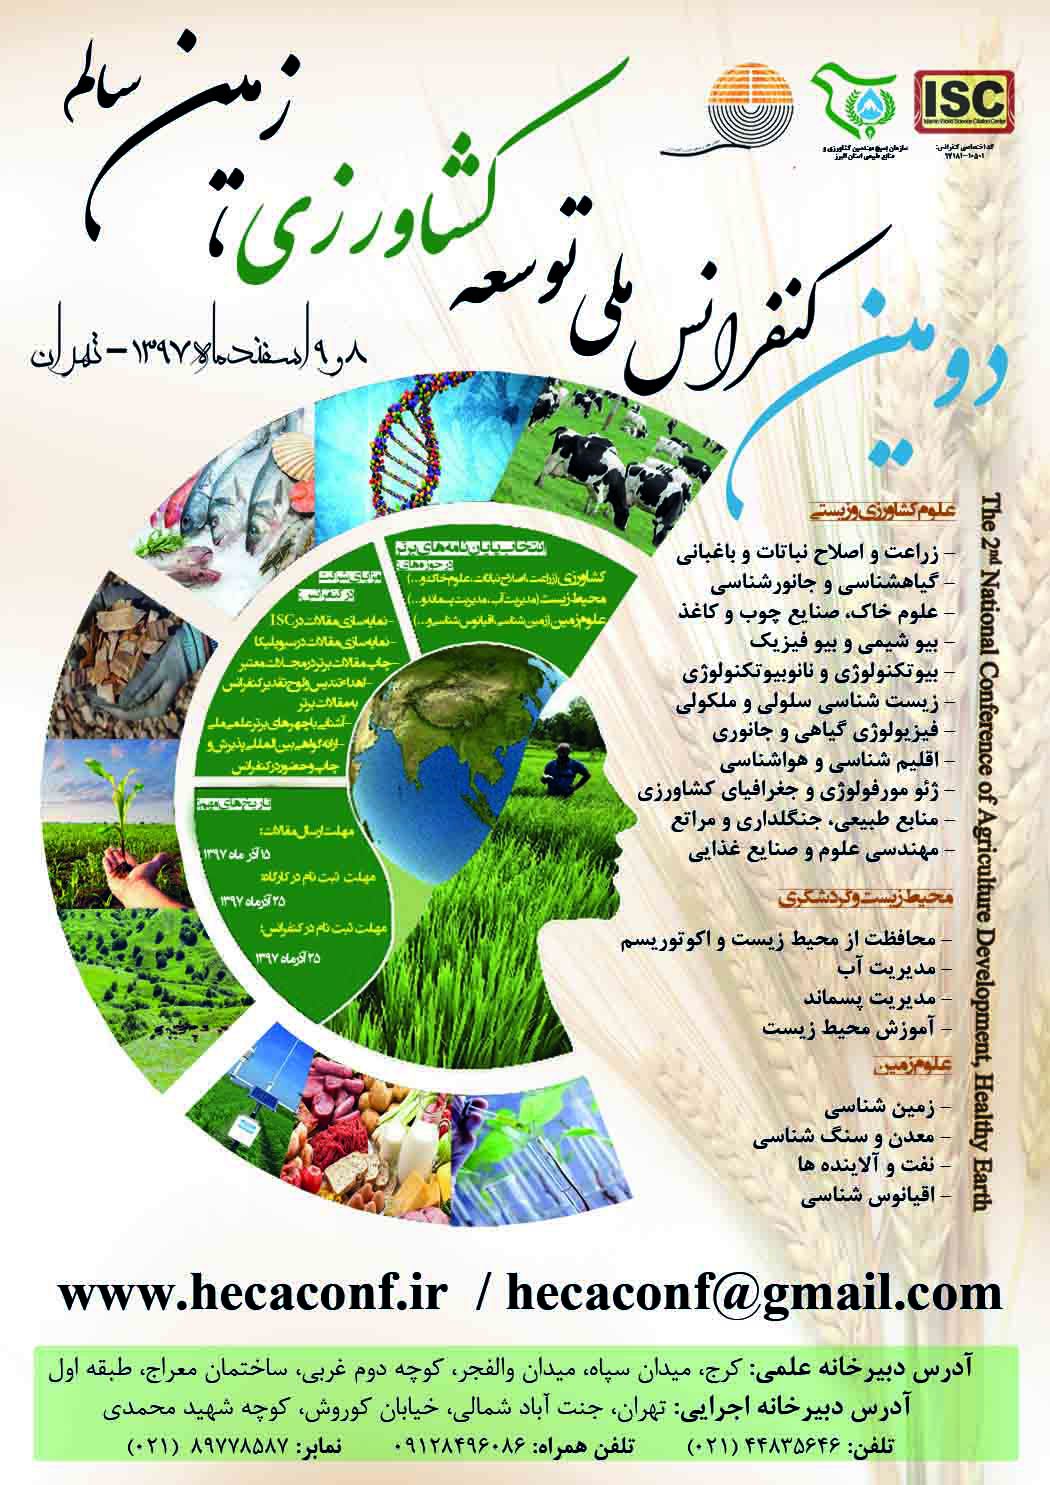 دومین کنفرانس ملی توسعه کشاورزی، زمین سالم